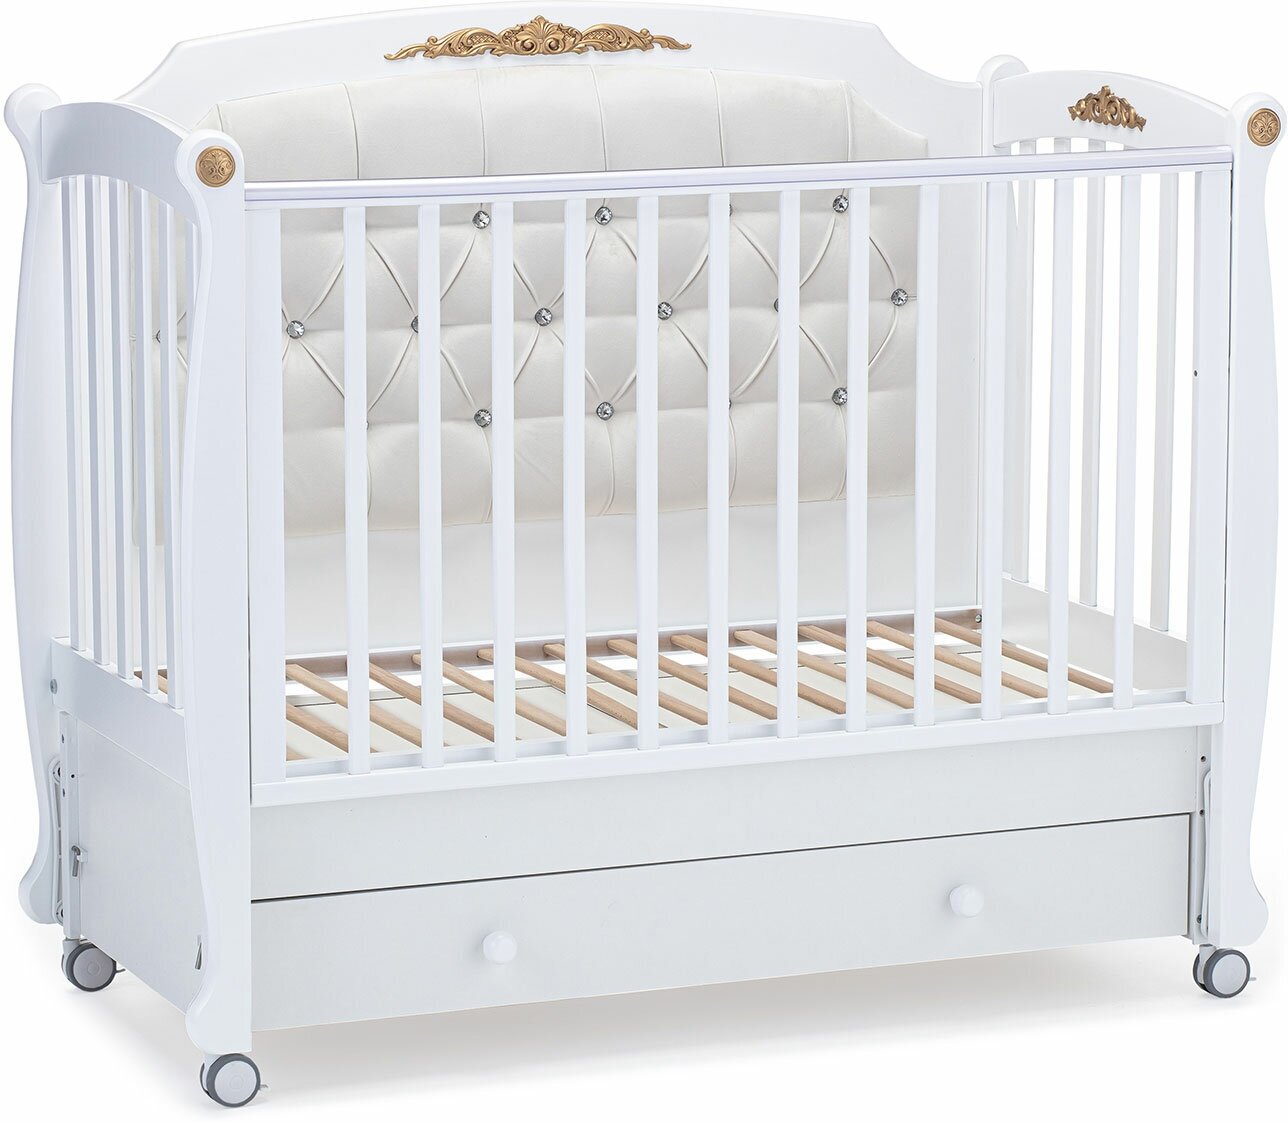 Детская кровать Nuovita Furore Swing продольный (Bianco/Белый)